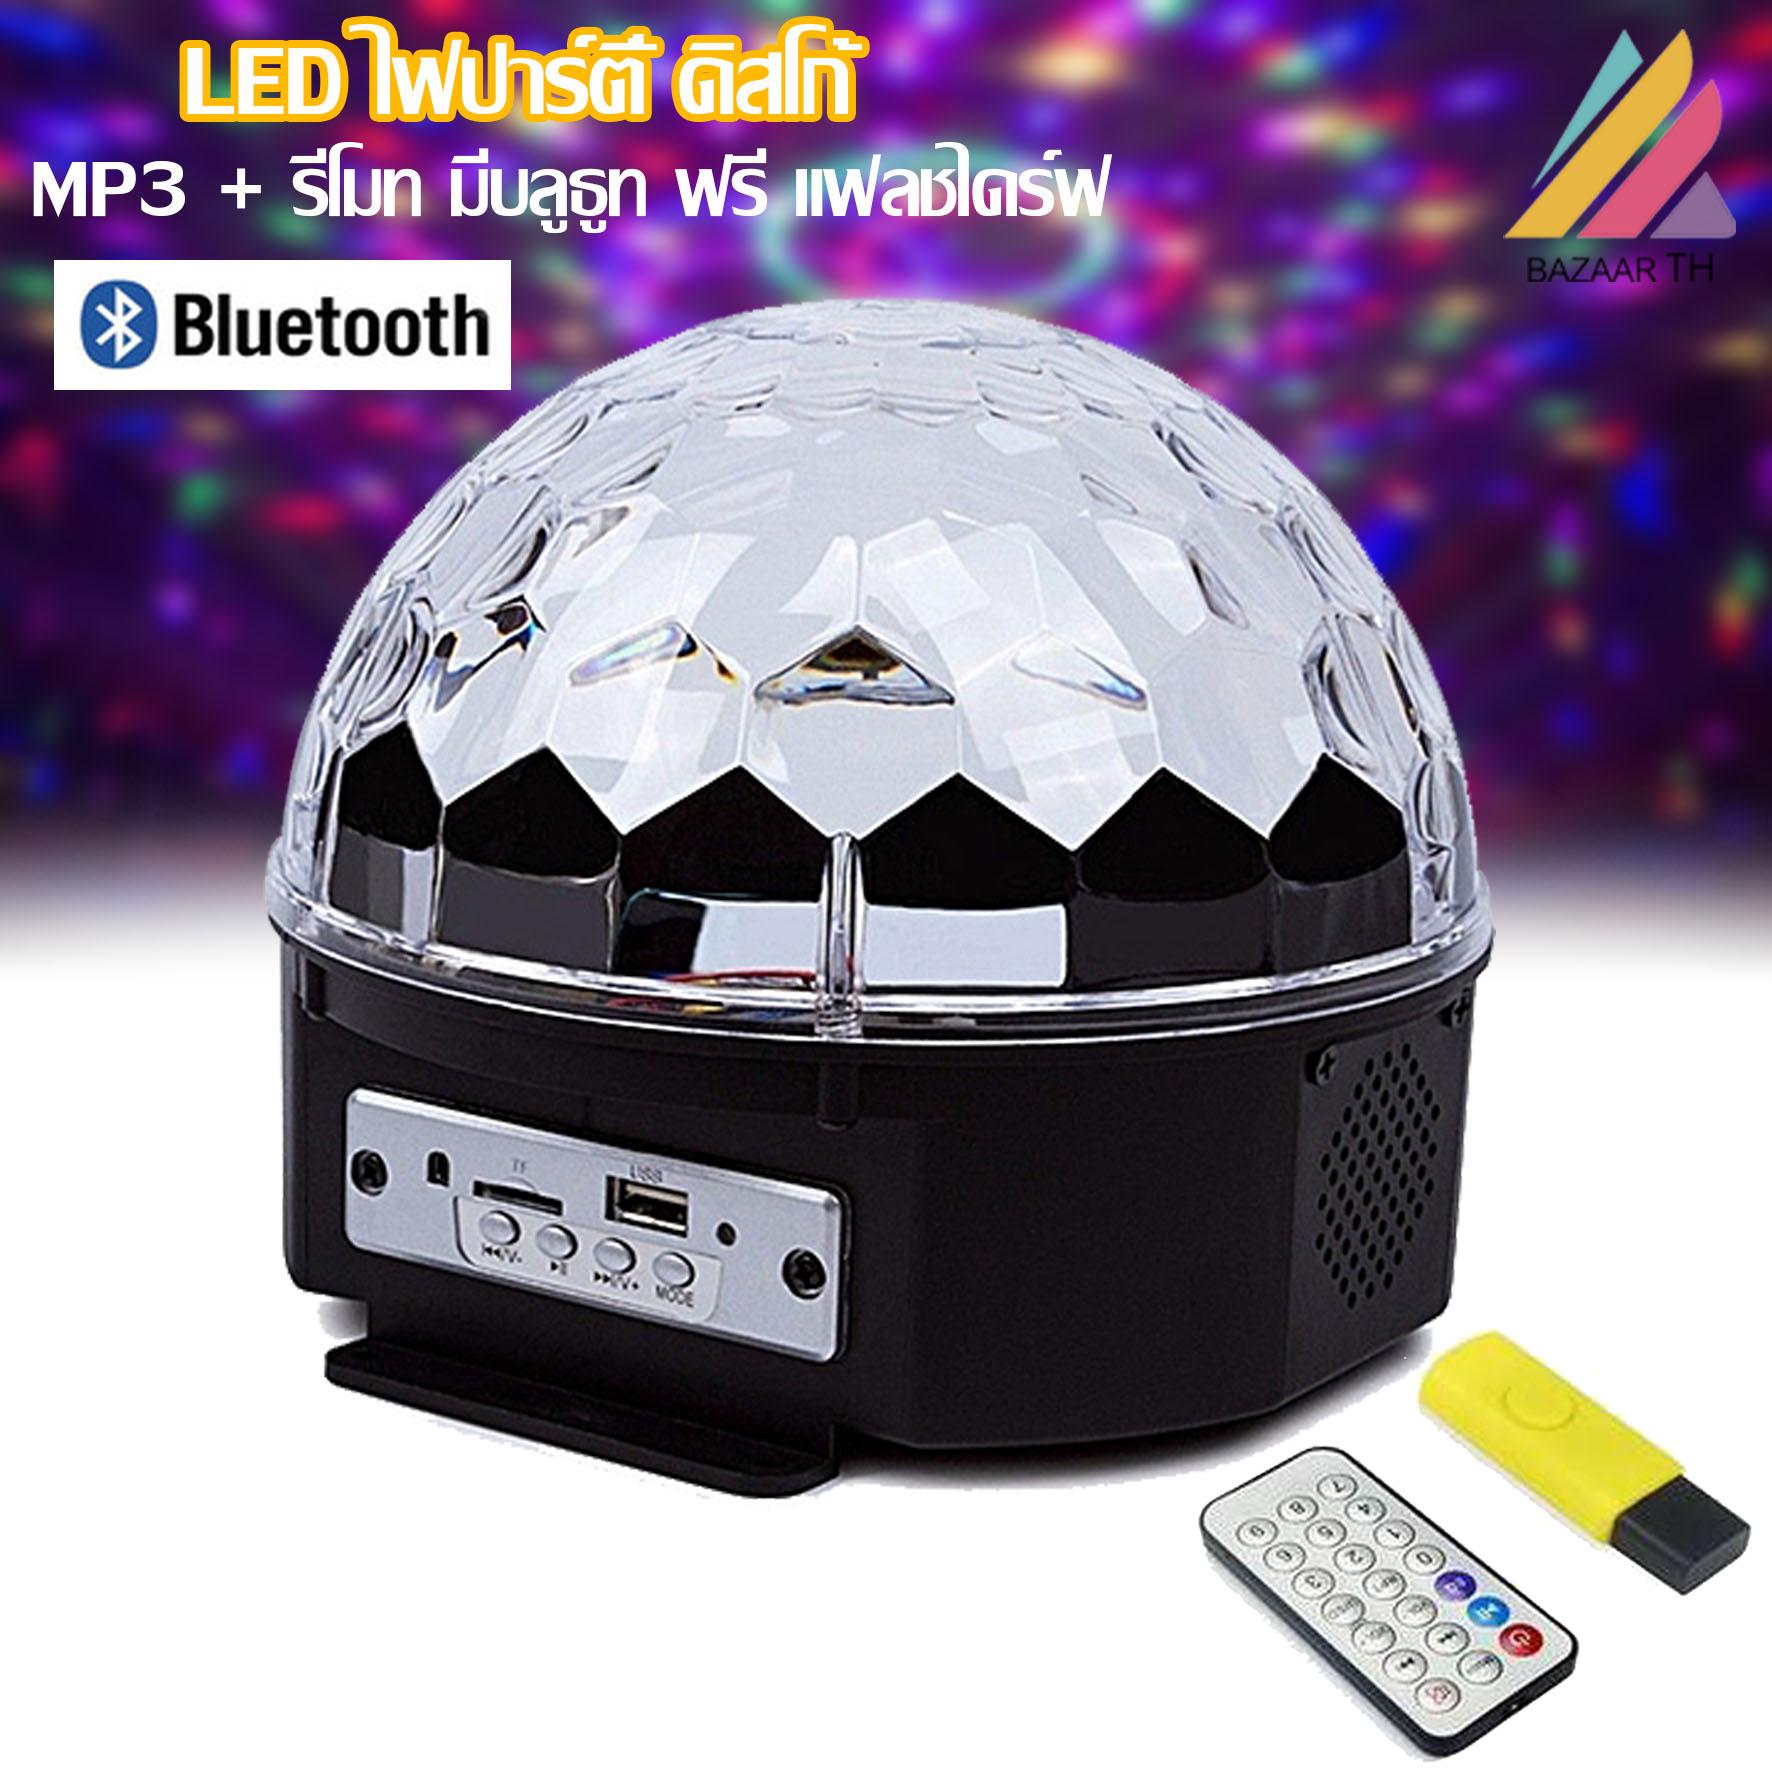 LED Magic Ball Light ไฟปาร์ตี้ ไฟดิสโก้ ตามจังหวะ ไฟดิสโก้เทค ไฟคาราโอเกะ ไฟเวที ไฟดิสโก้เธค MP3 + รีโมท มีบลูธูท 436B พร้อมแฟลชไดร์ฟ